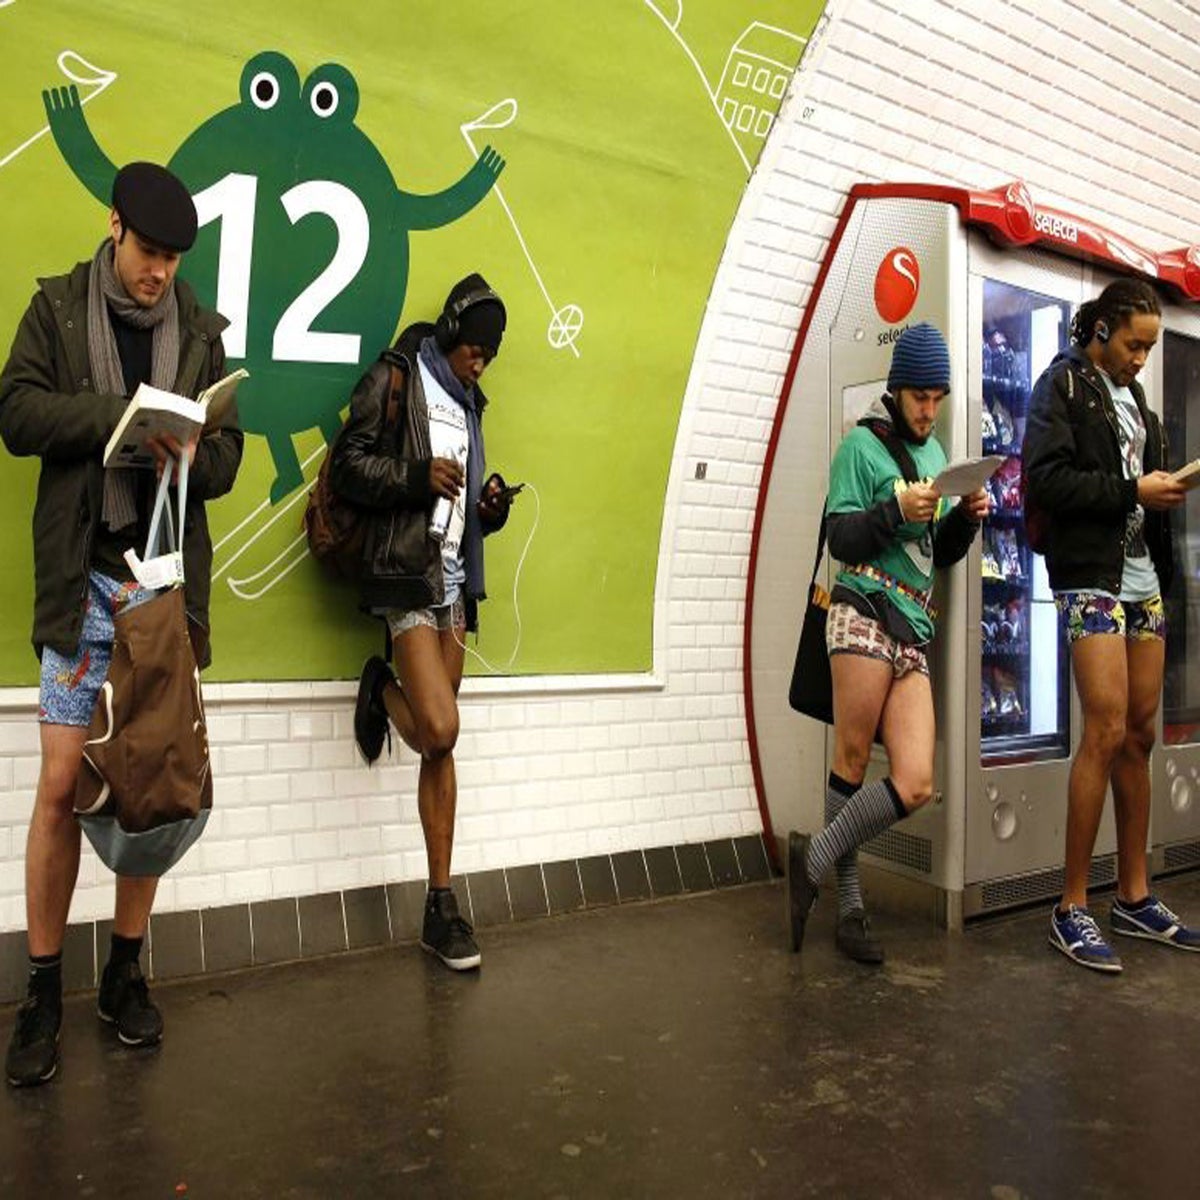 No Pants Subway Ride 2017